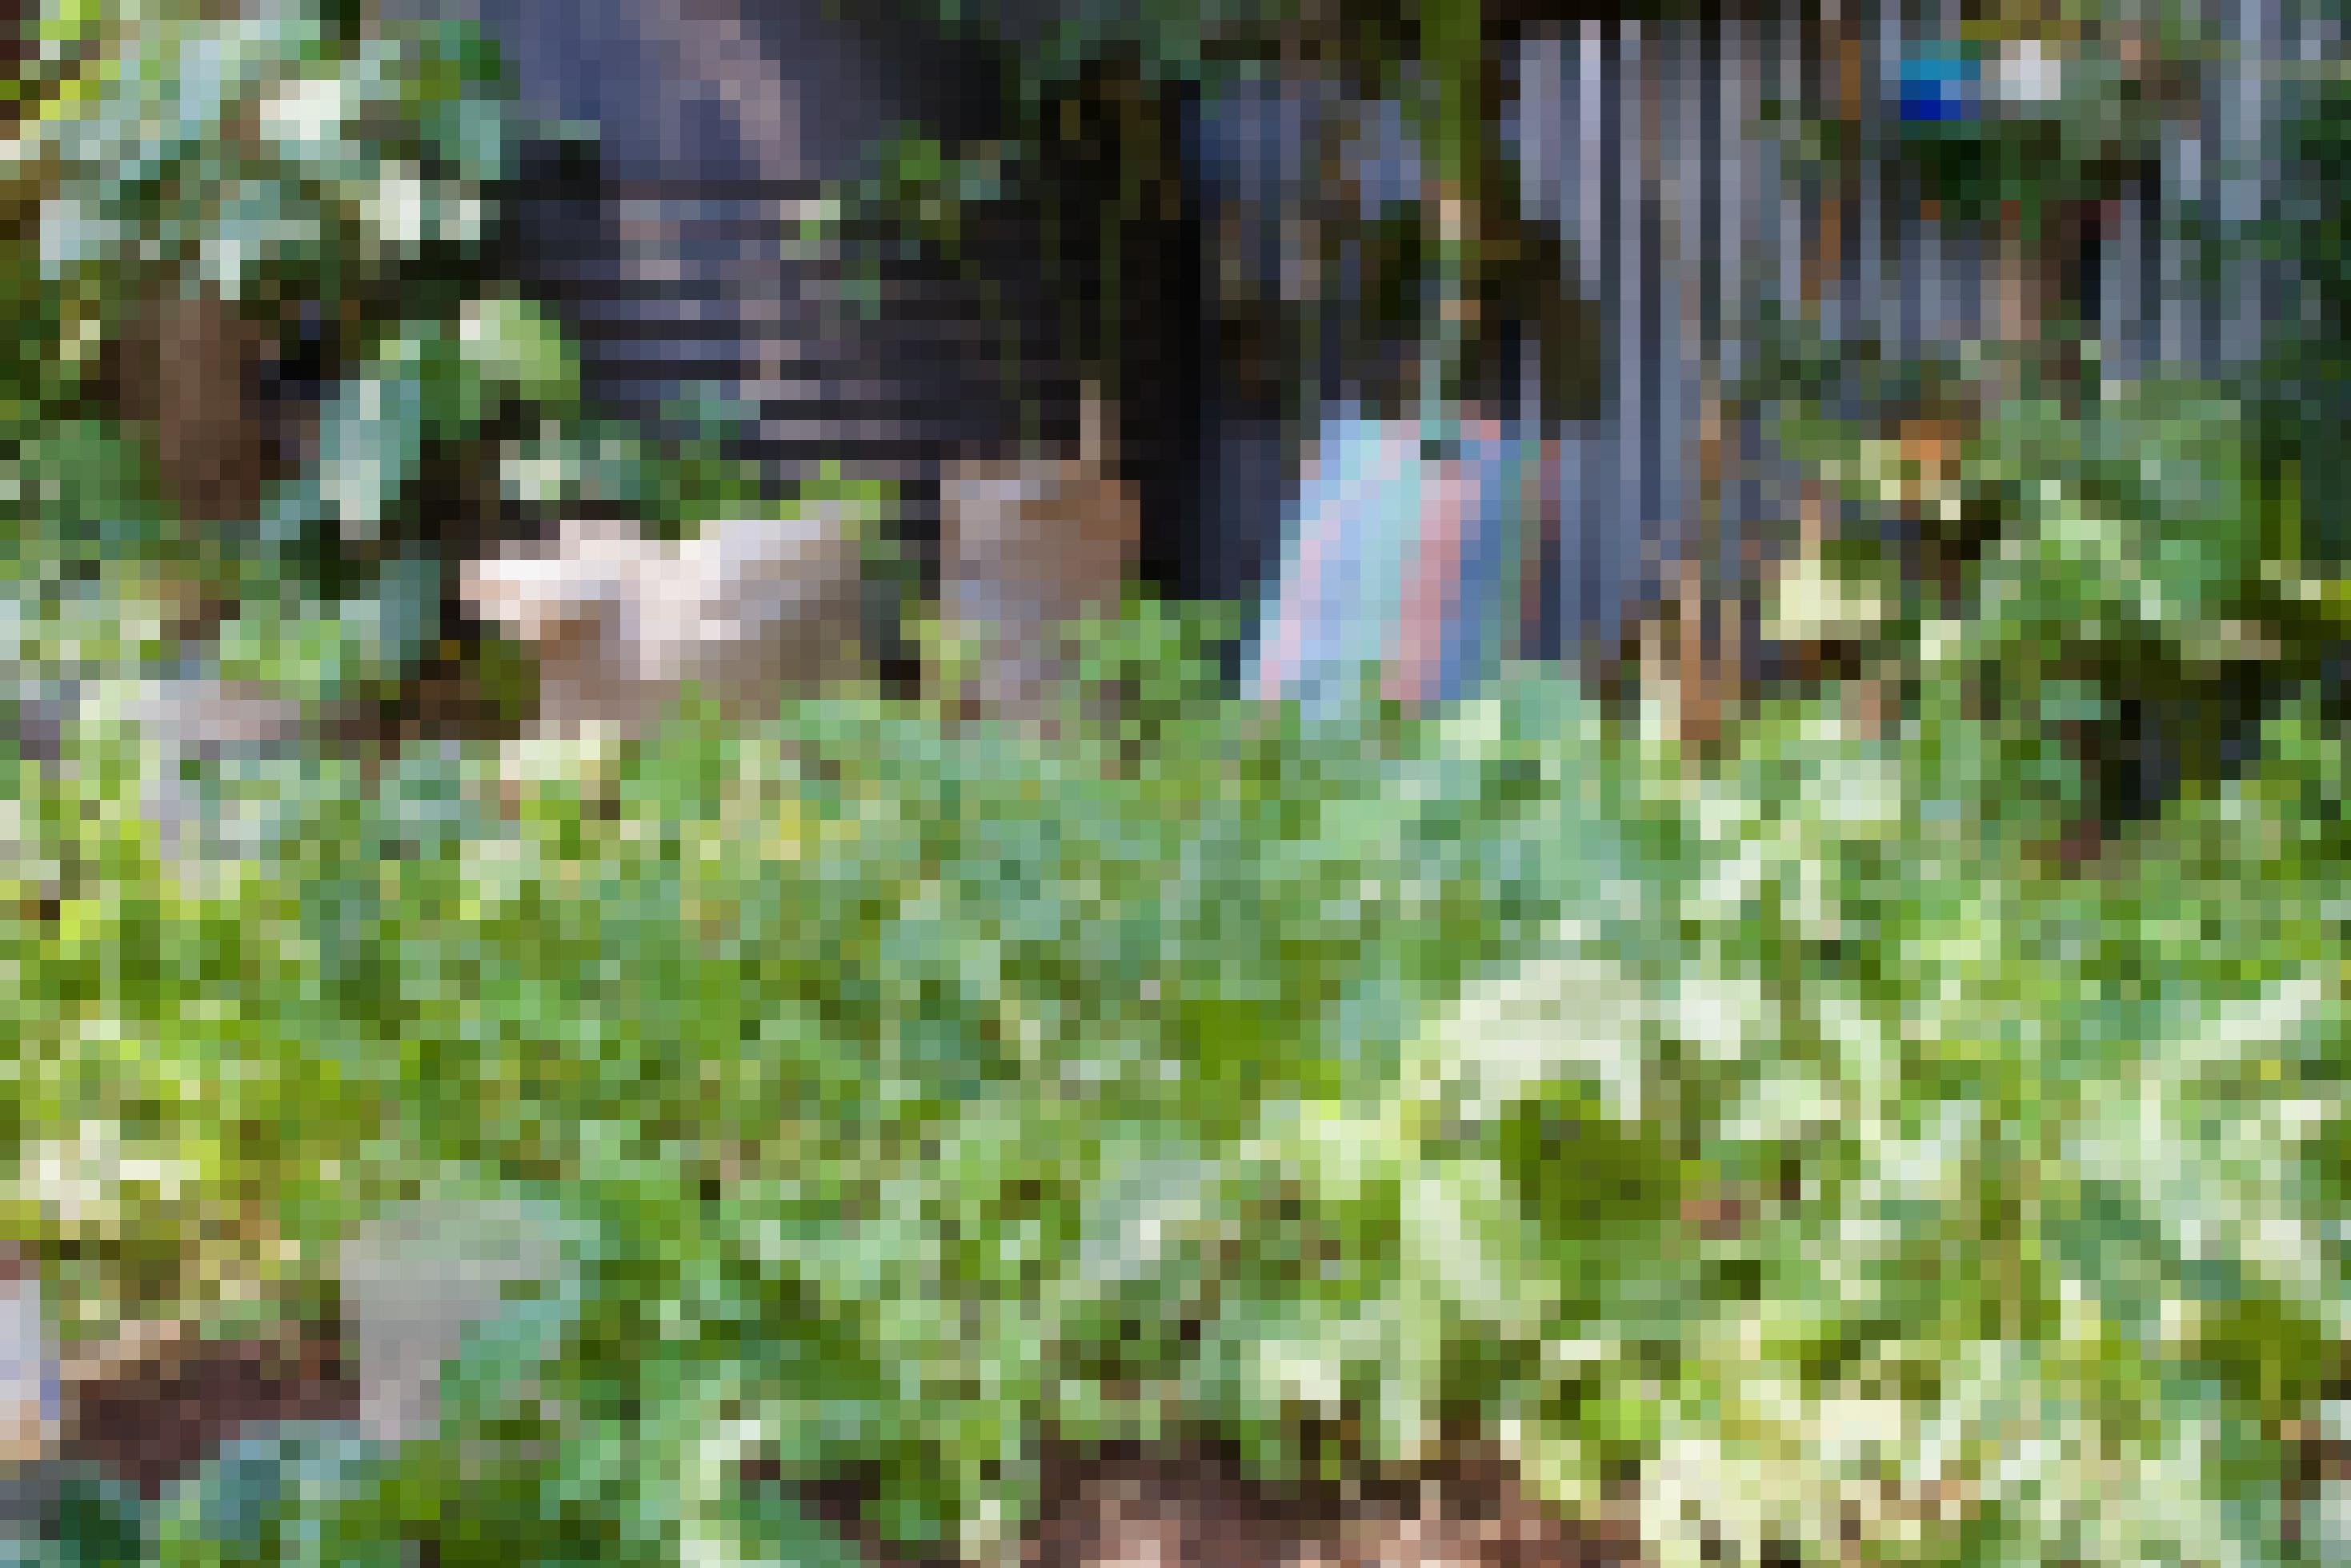 Ein Ausschnitt aus Kiambas Garten, das Blattgemüse steht dicht und kräftig, im Hintergrund sind bepflanzte Säcke und halbierte PET-Flaschen zu sehen.